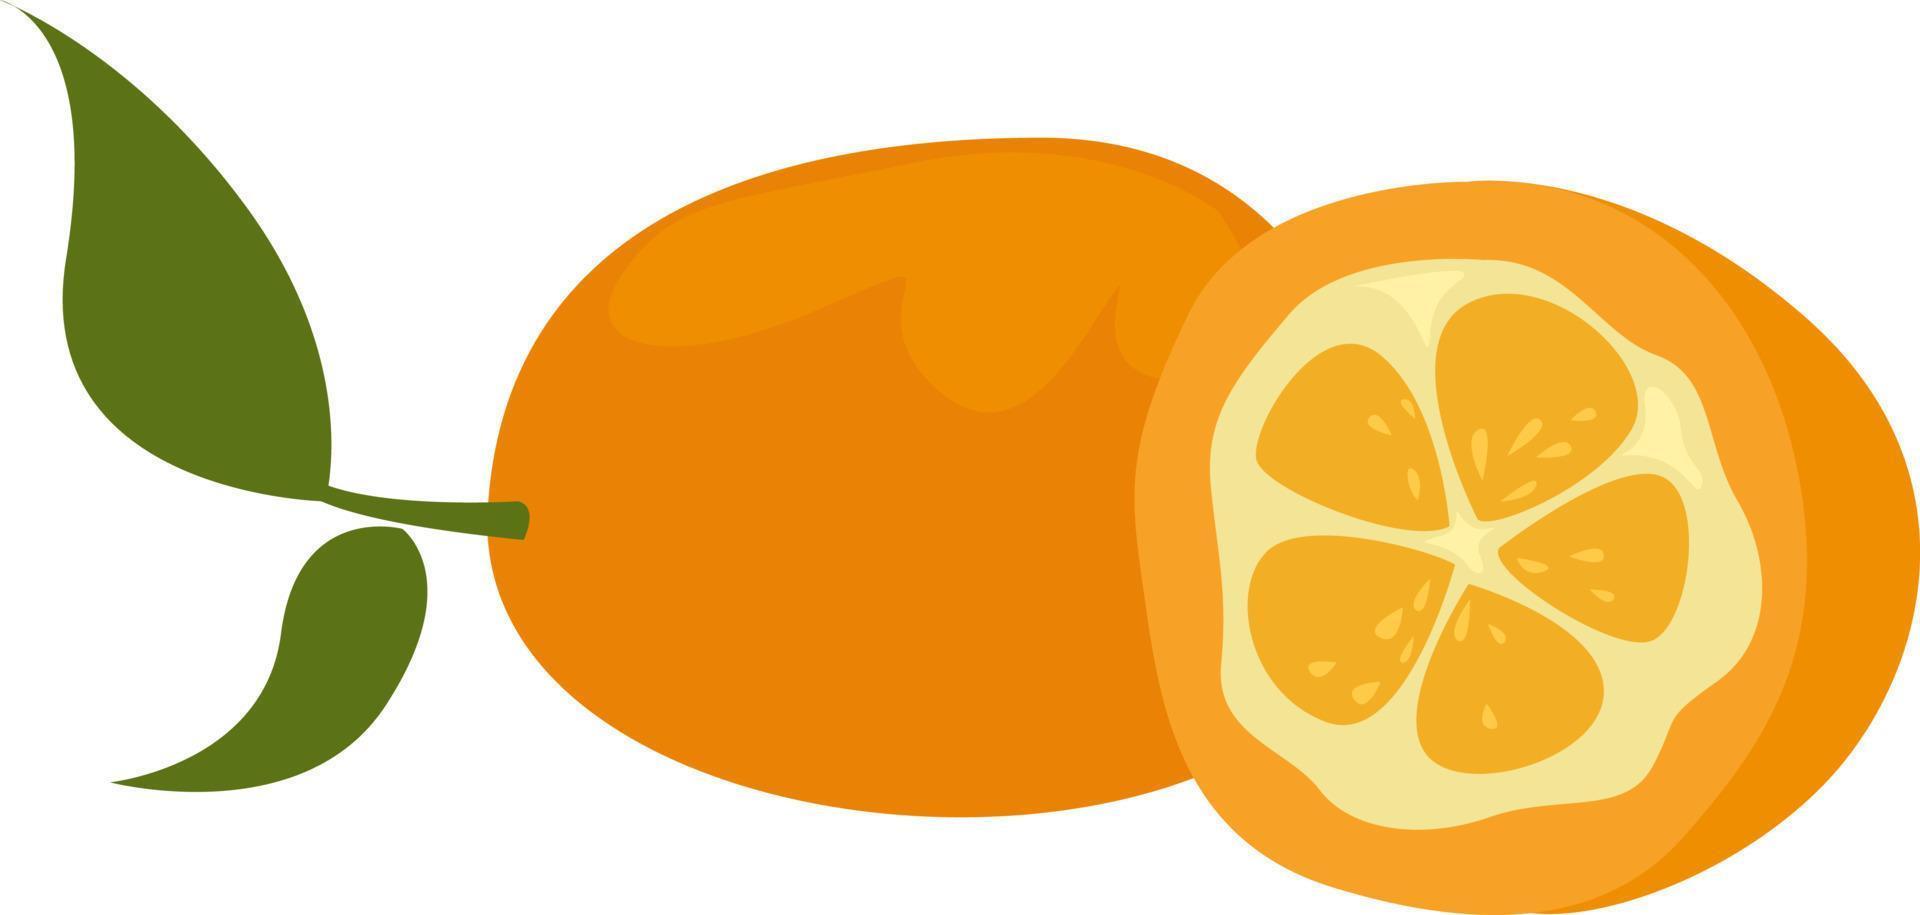 Fruta kumquat, ilustración, vector sobre fondo blanco.